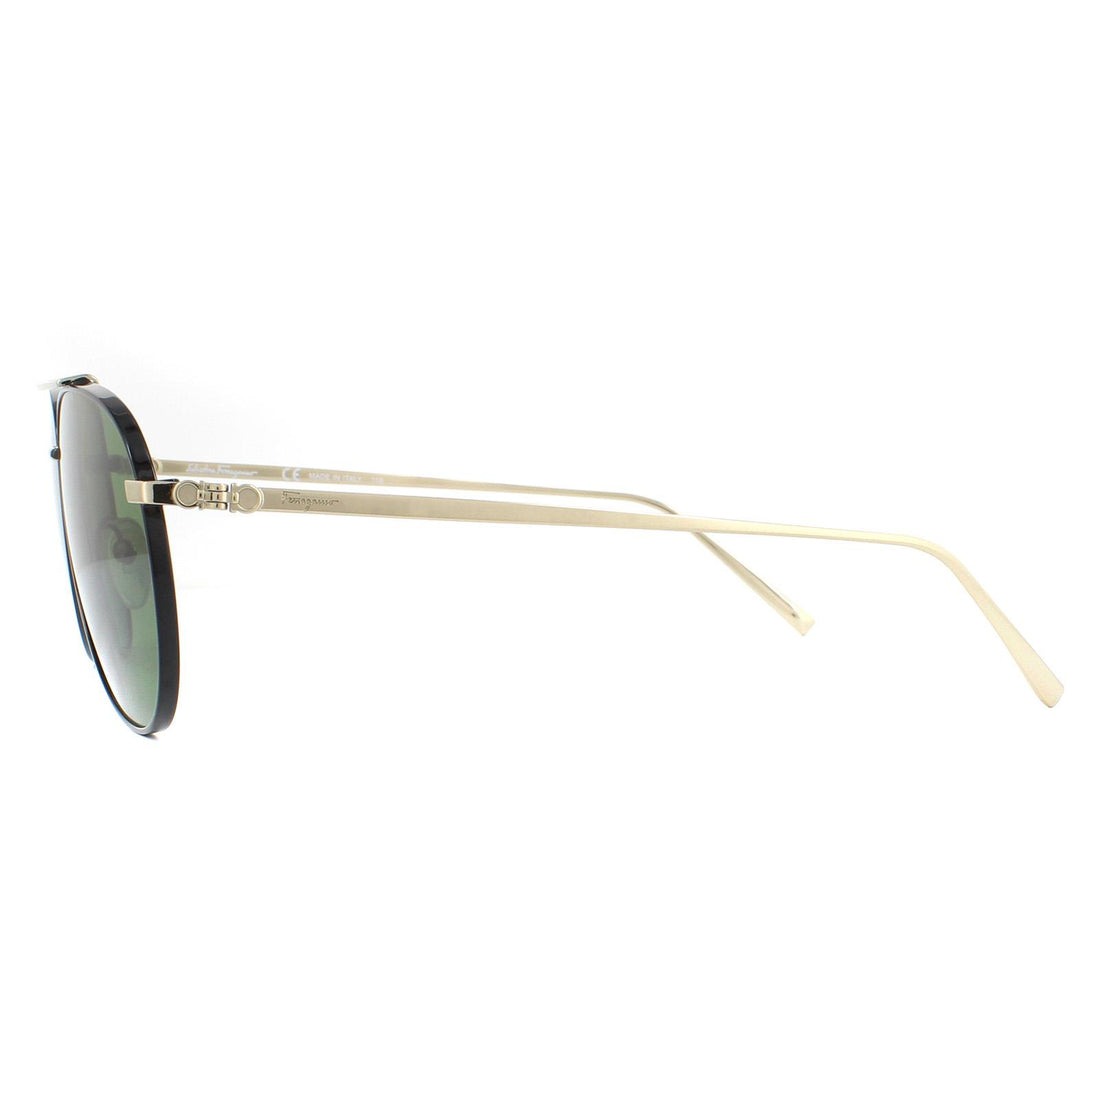 Salvatore Ferragamo SF201S Sunglasses